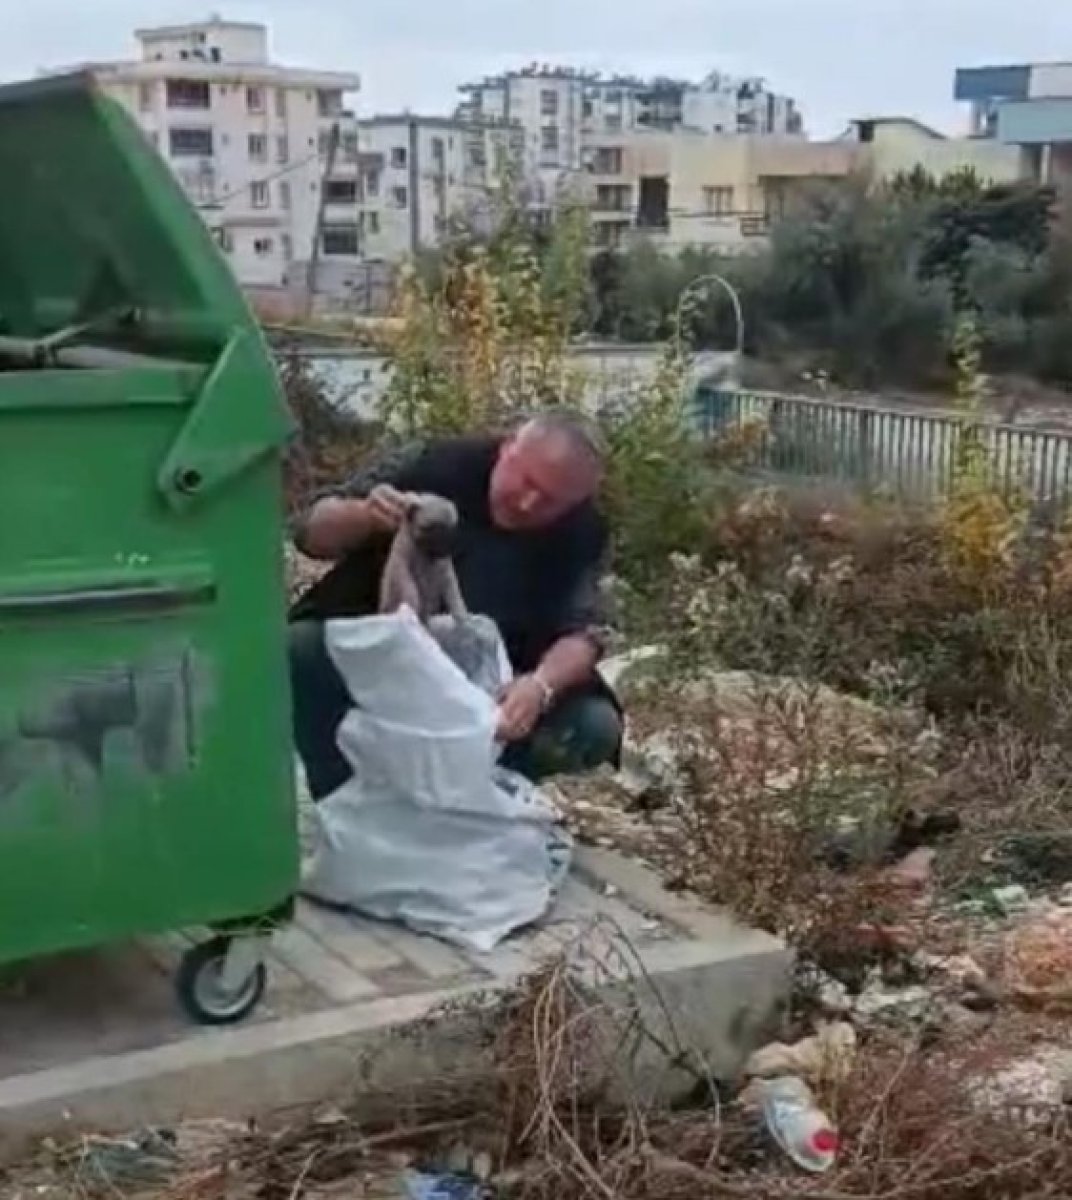 Osmaniye de çöpe atılan çuvaldan yavru köpekler çıktı #2